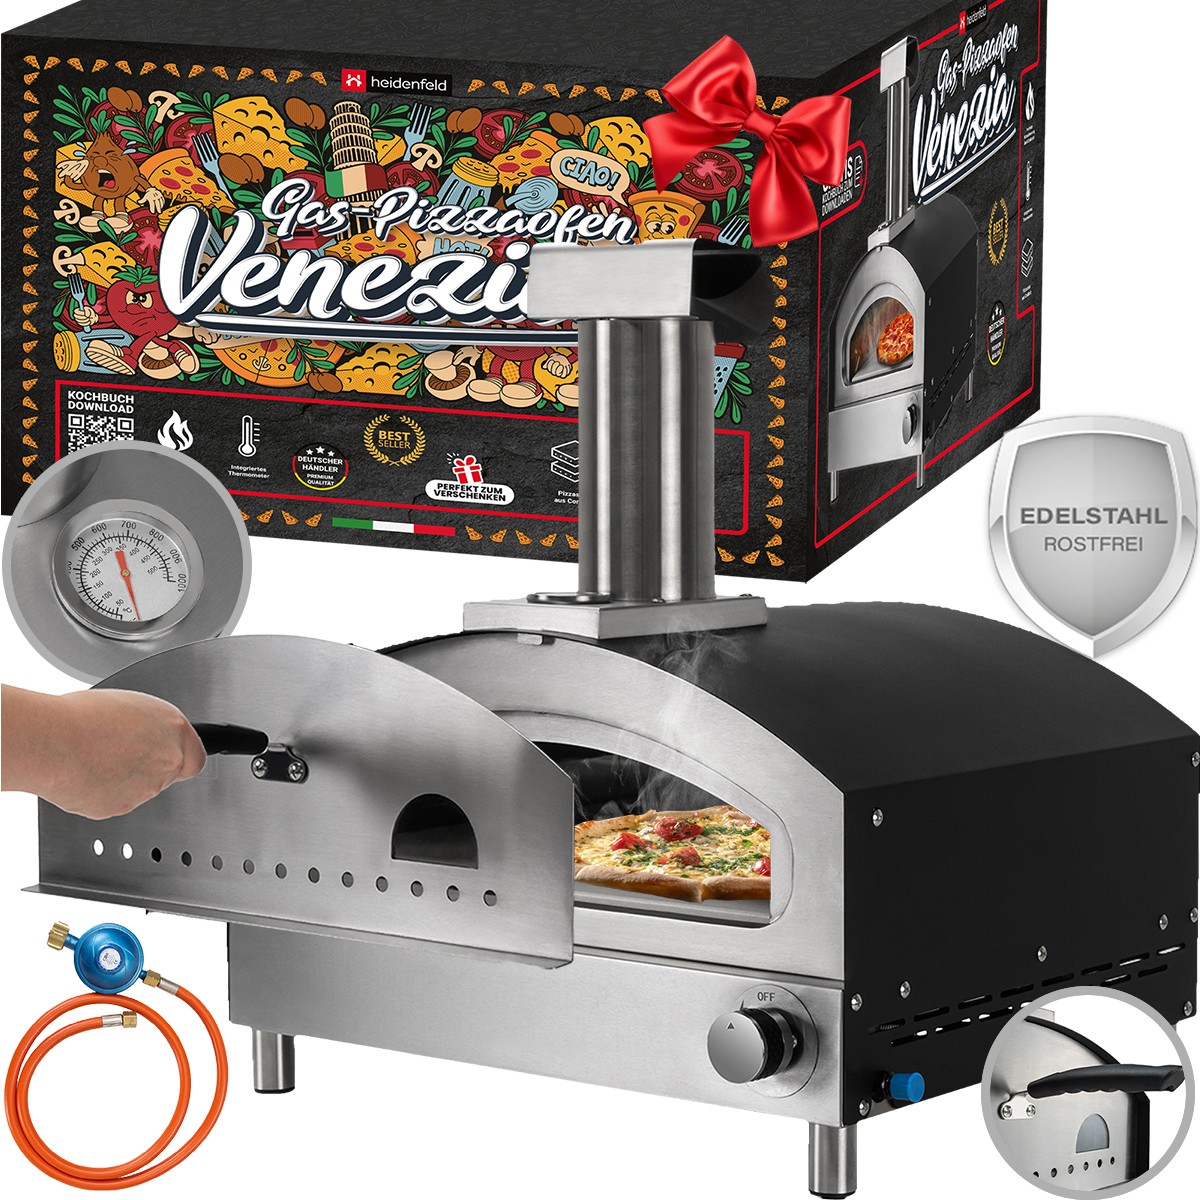 01-pizzaofen-gas-heidenfeld-pizzaofen-gasofen-venezia-startbild